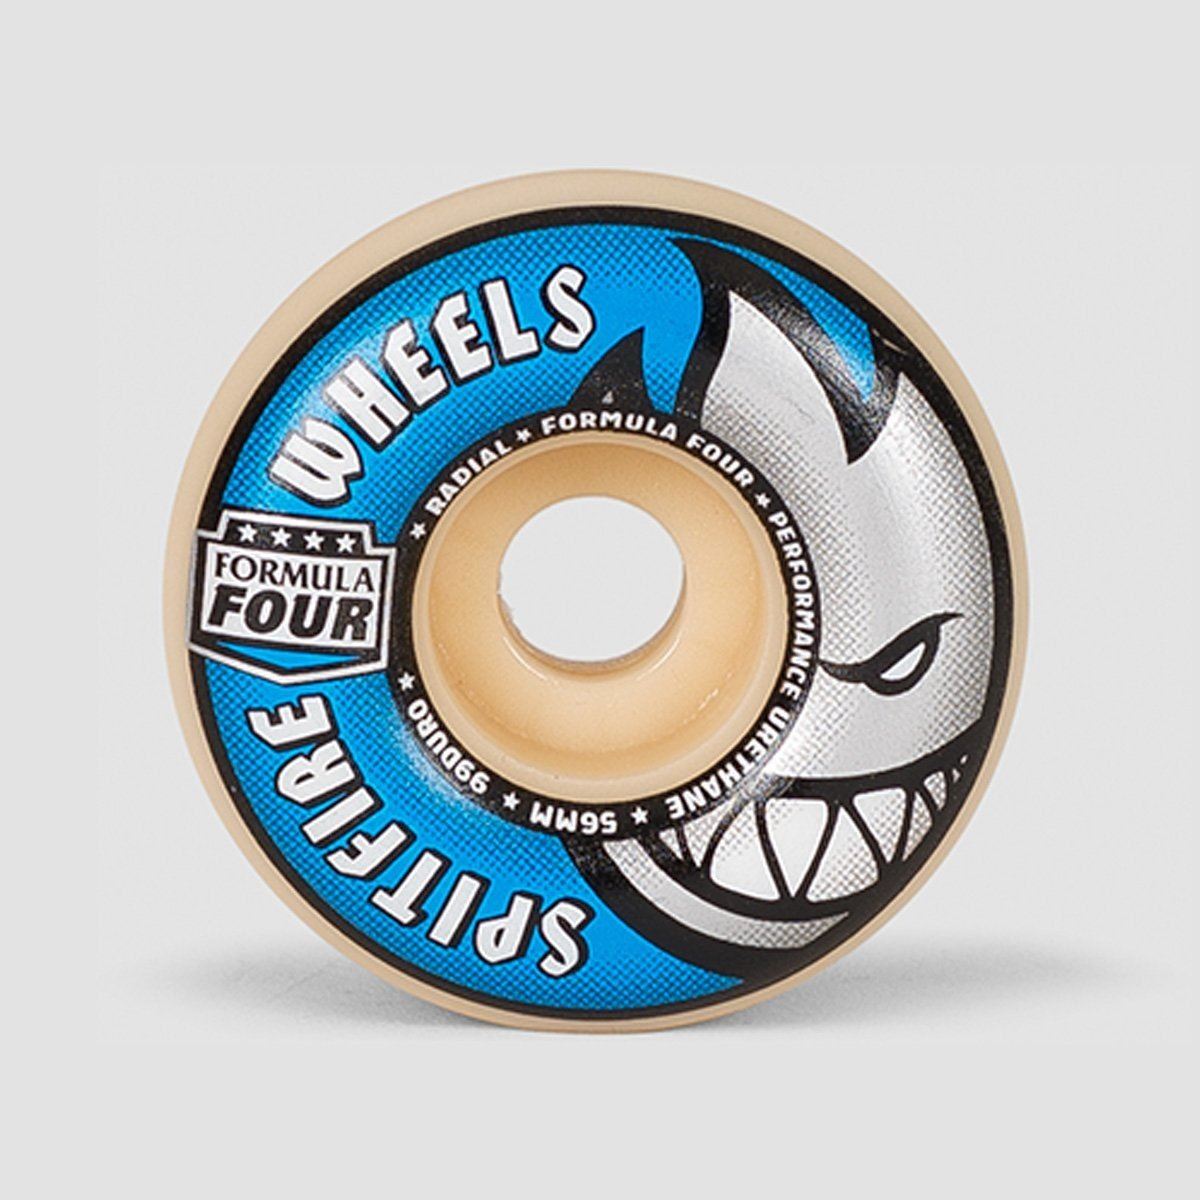 Spitfire Formula Four Radial 99DU Skateboard Wheels Natural/Blue 56mm